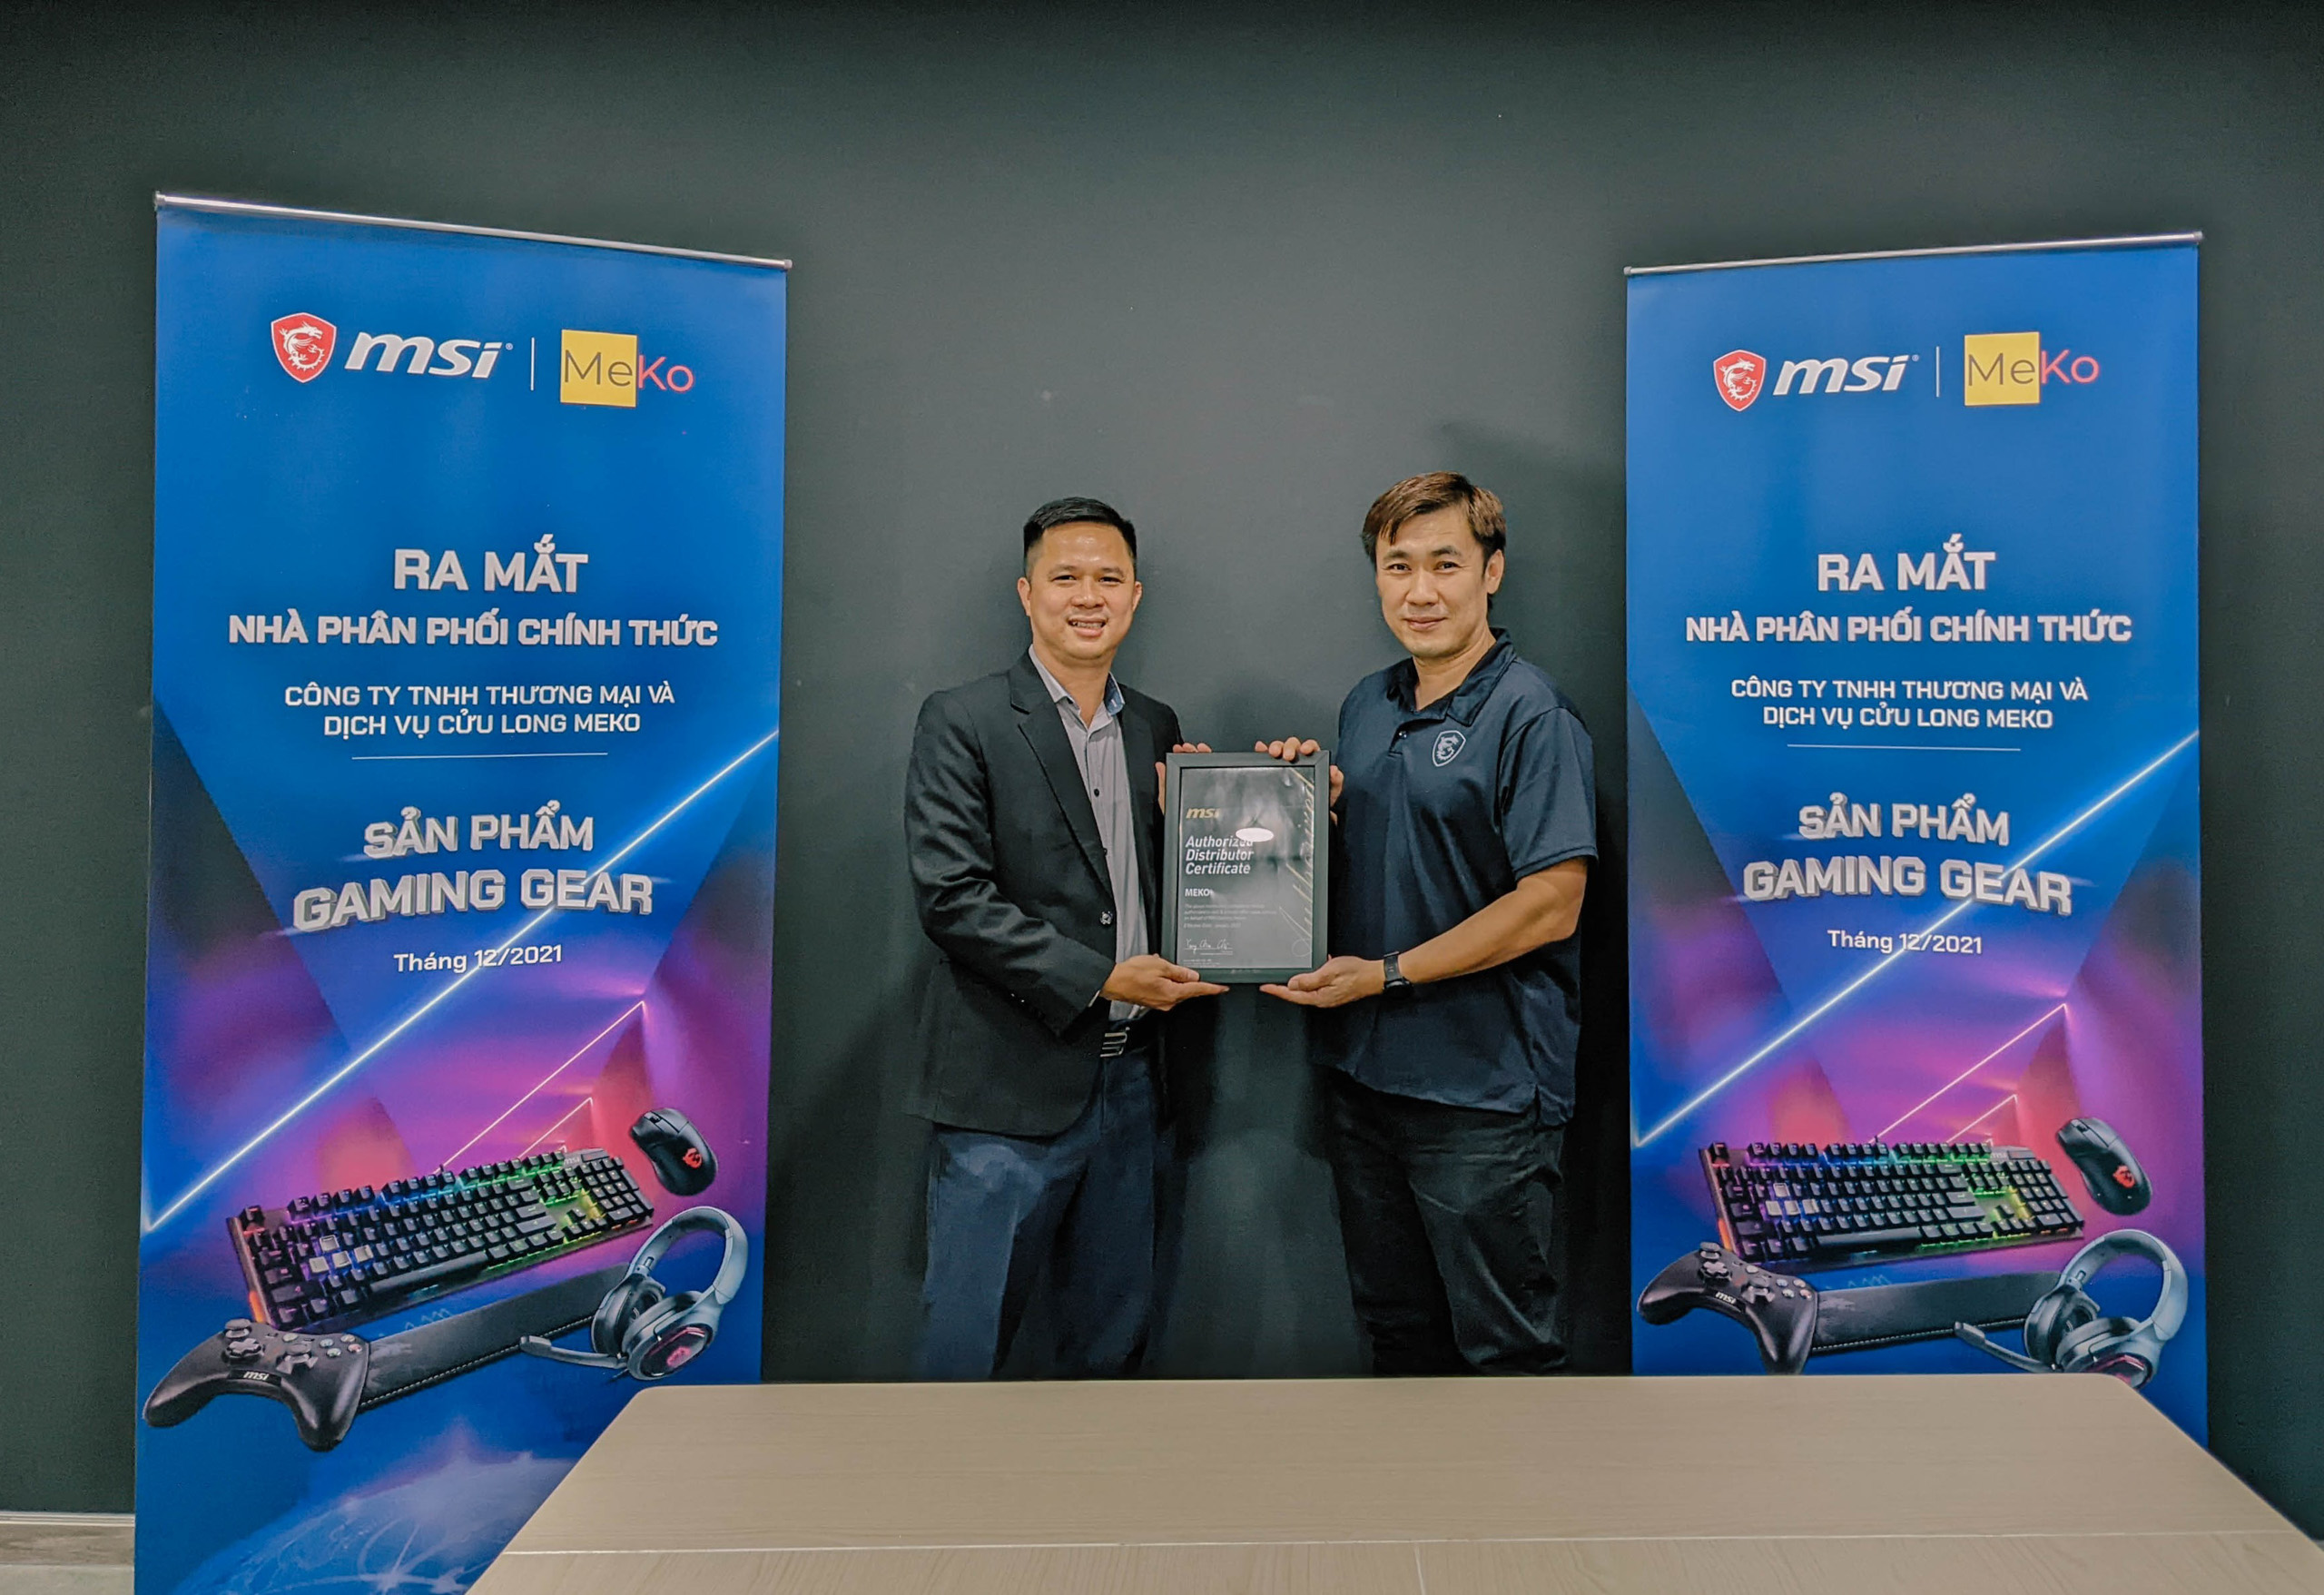 MeKo chính thức trở thành nhà phân phối sản phẩm MSI tại Việt Nam